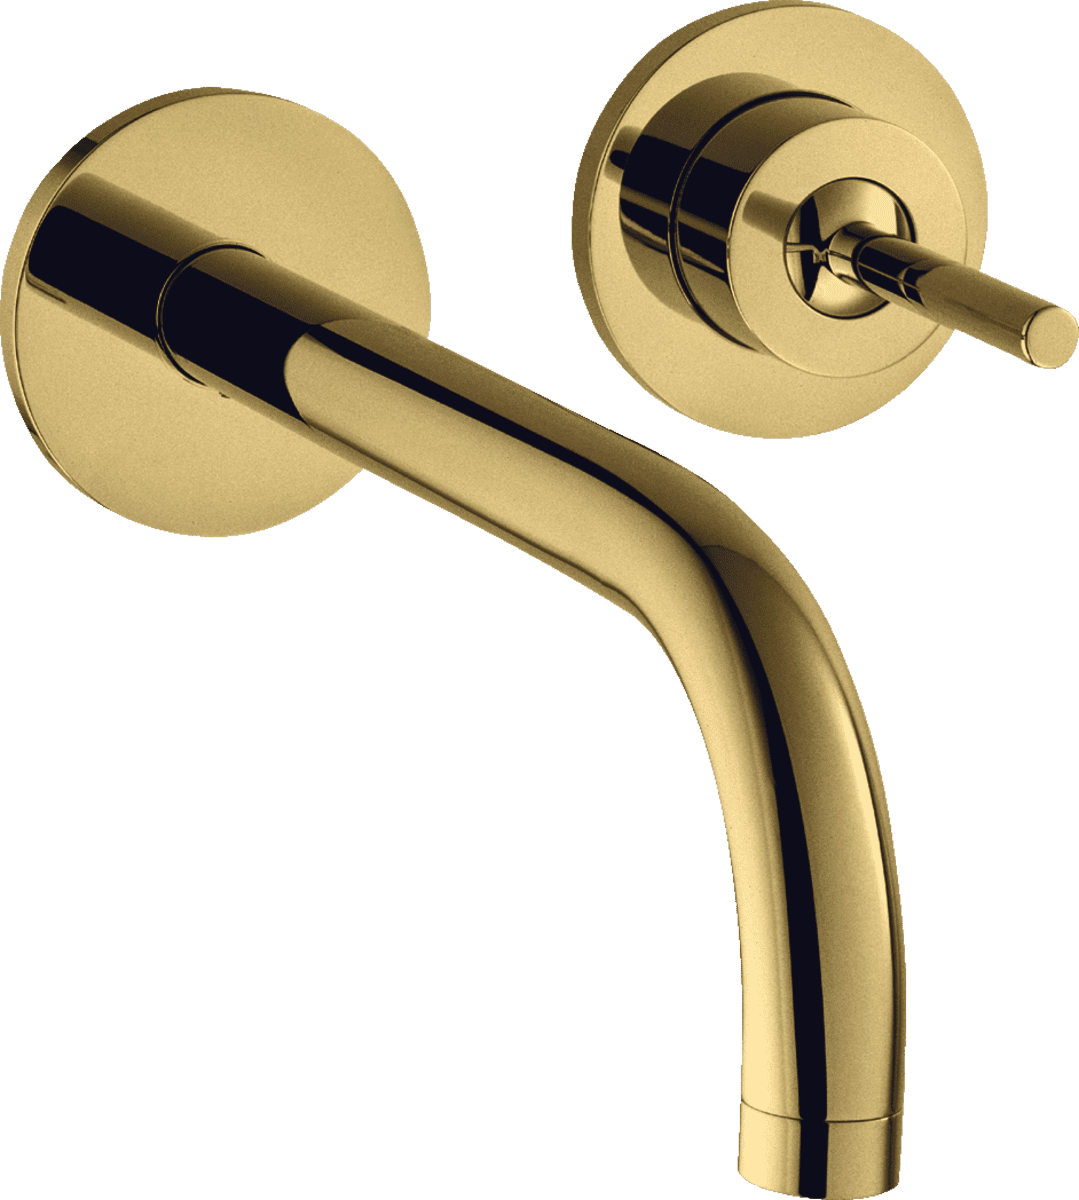 εικόνα του HANSGROHE AXOR Uno Single lever basin mixer for concealed installation wall-mounted with spout 225 mm and escutcheons #38116990 - Polished Gold Optic